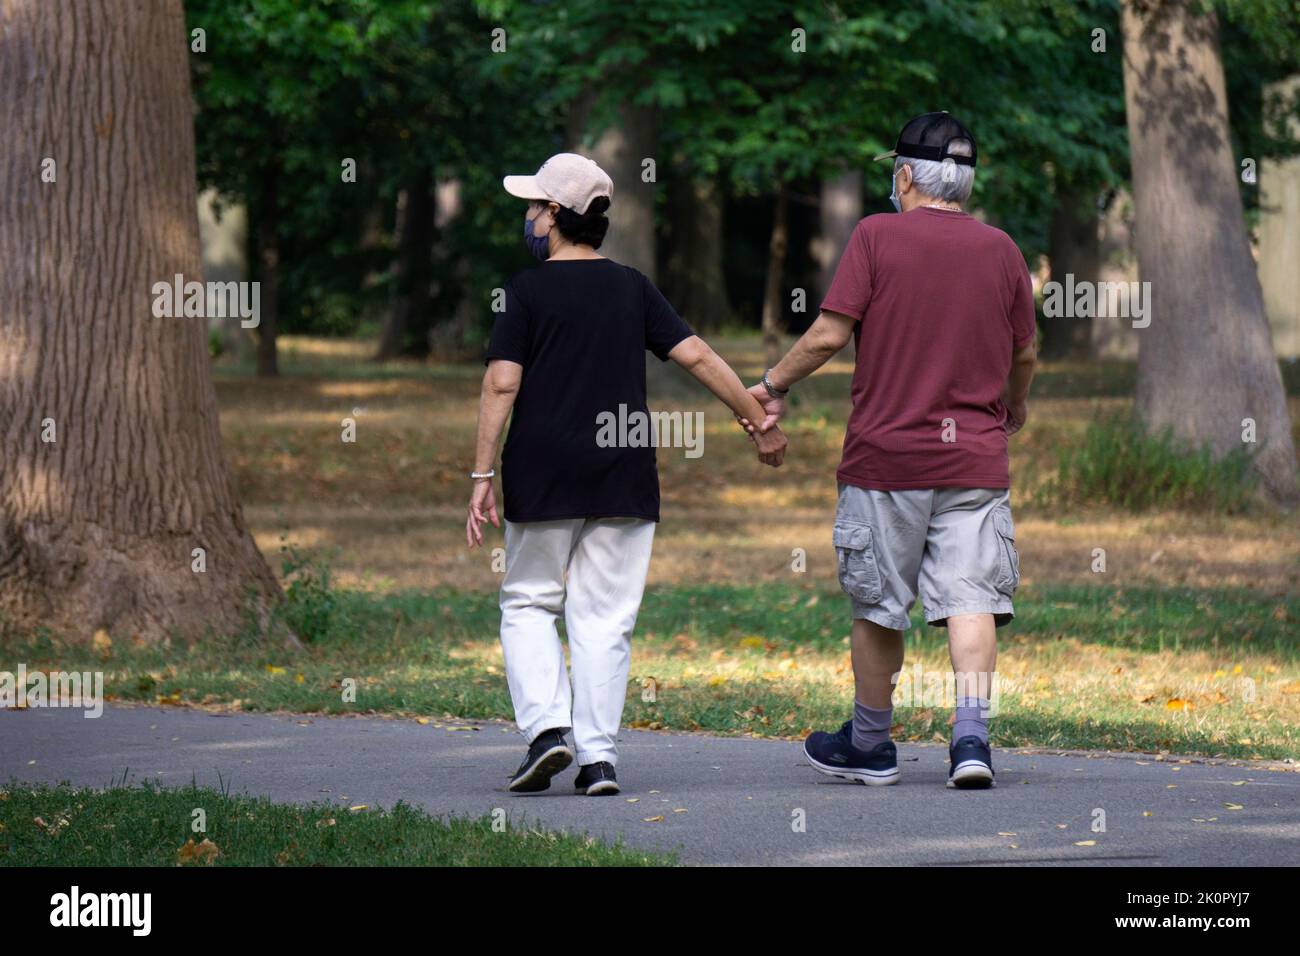 Ein älteres Paar, das im Park spazieren ging, wobei der Mann die Frau für zusätzliche Unterstützung und Stabilität festhielt. In Flushing, Queens, New York. Stockfoto